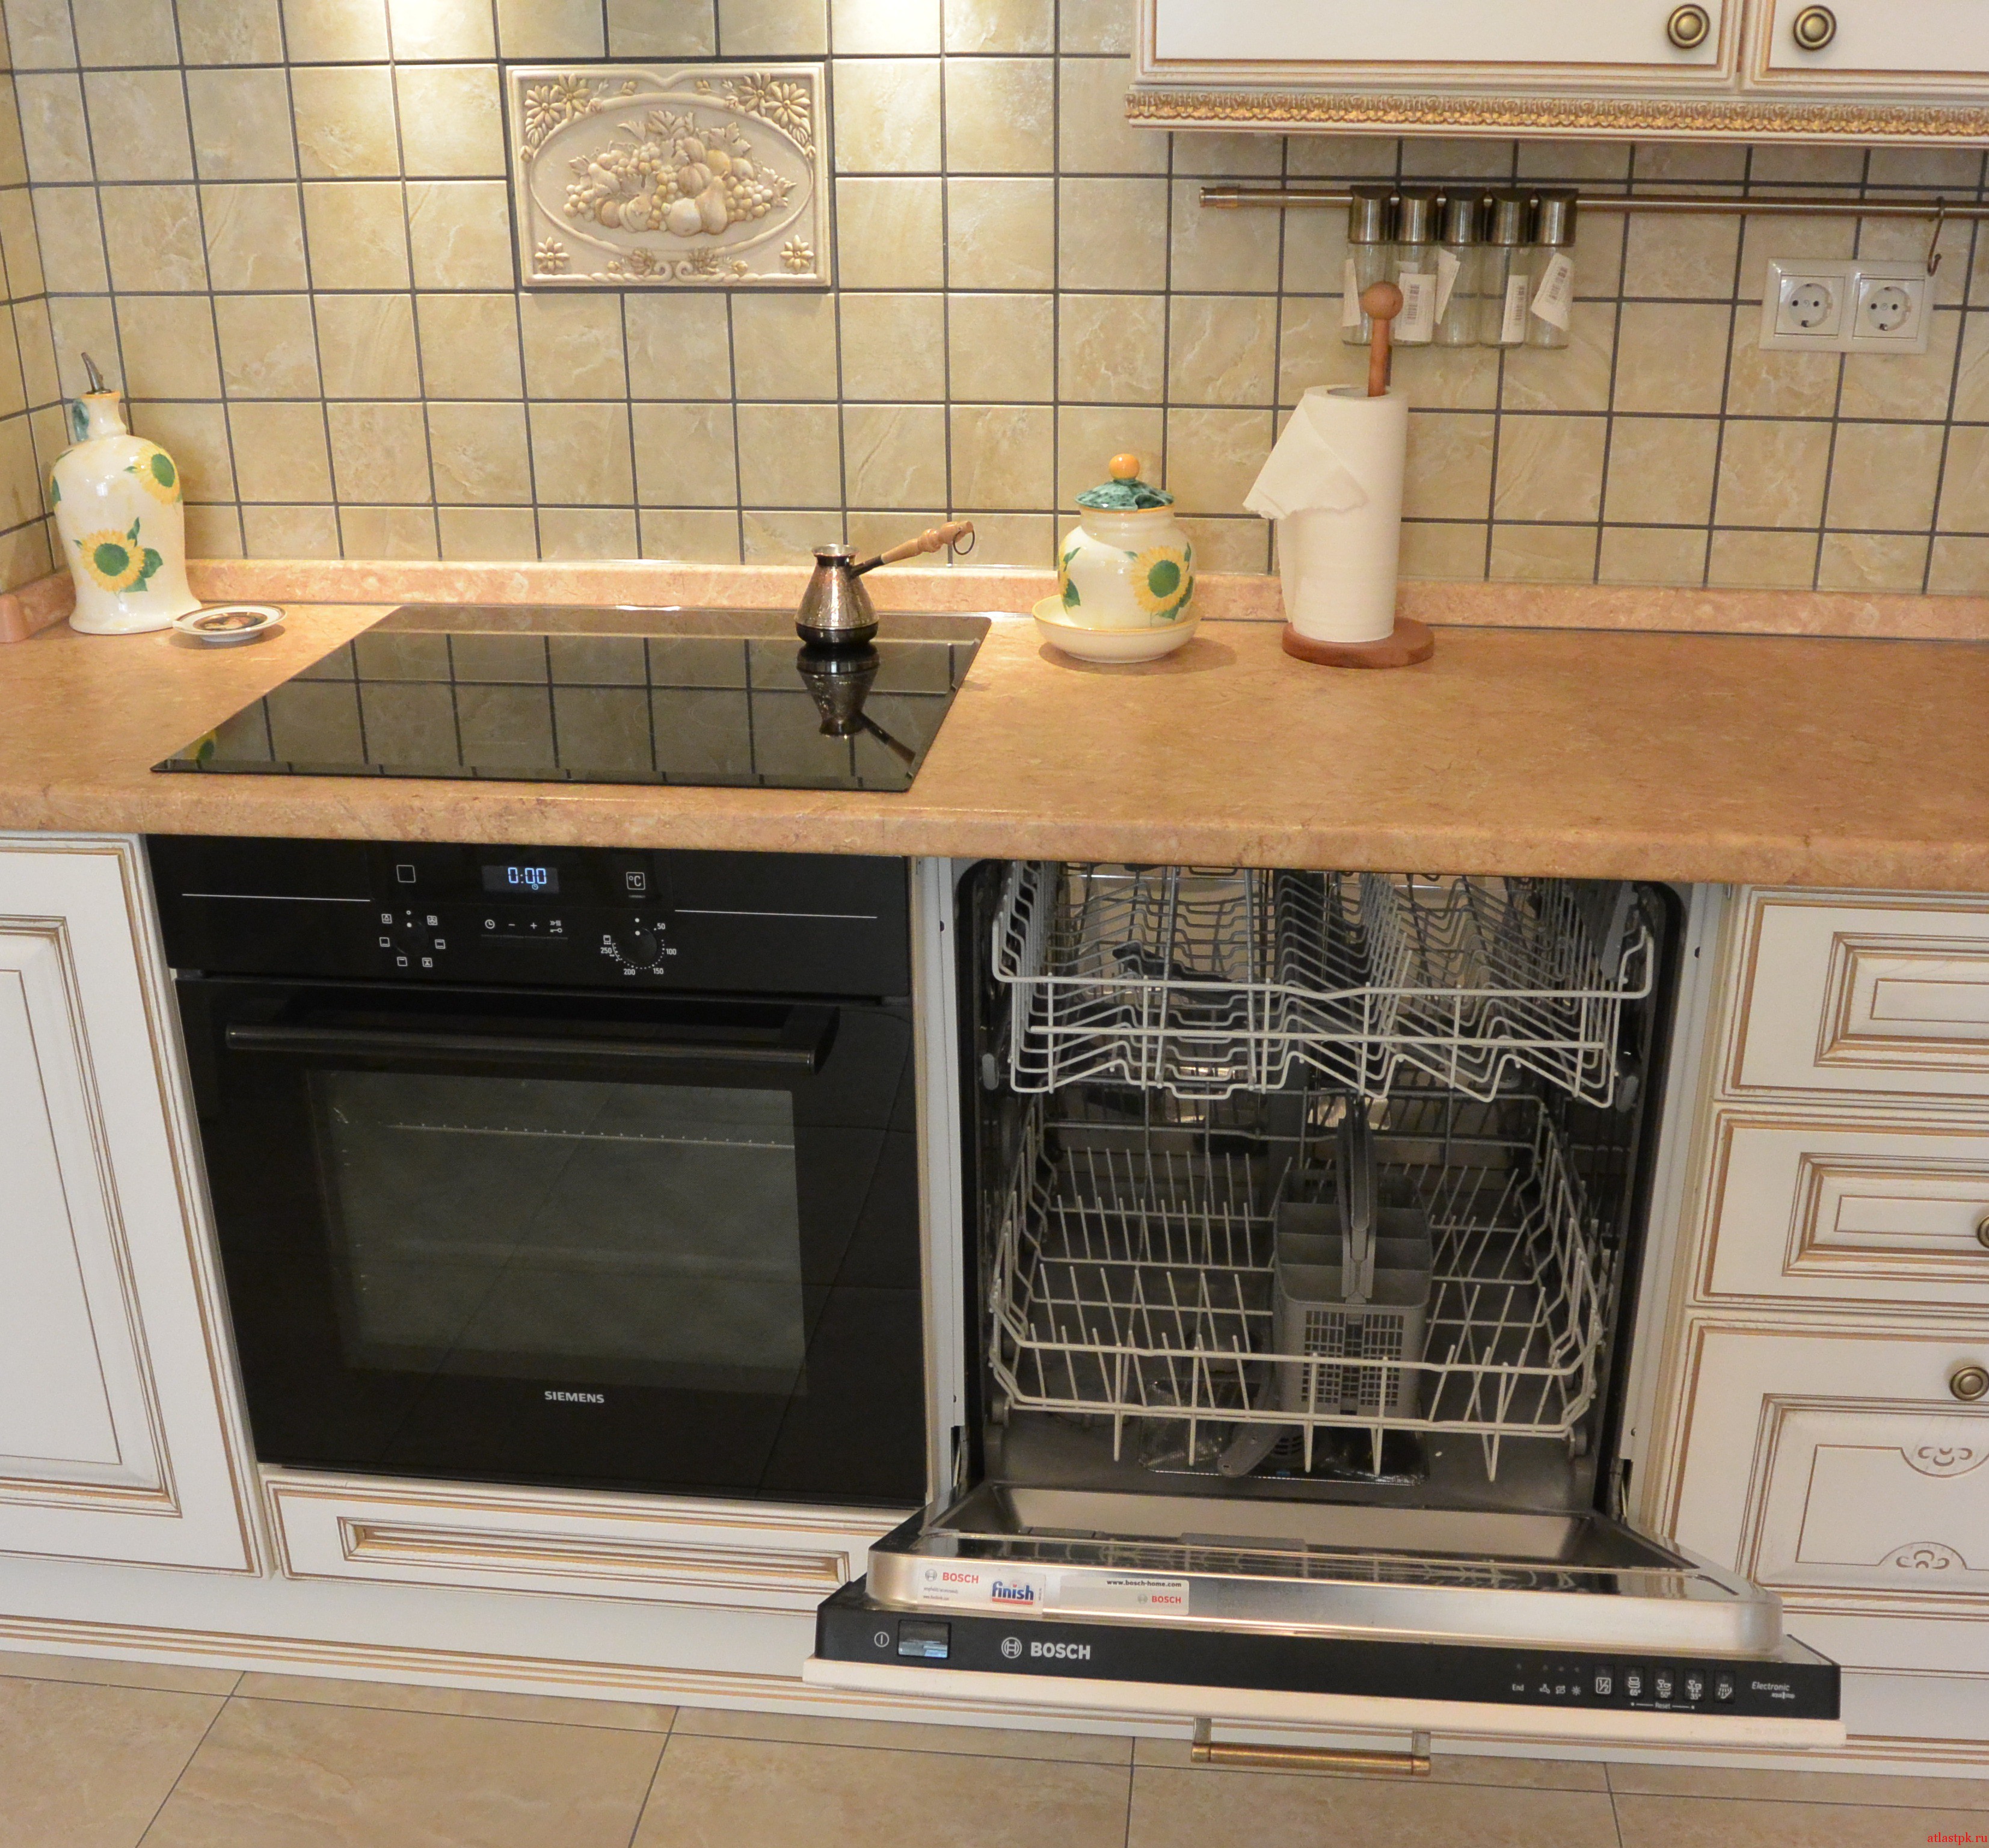 Духовой шкаф и посудомоечная. Посудомоечная машина Baumatic bdi681. Посудомоечная машина на кухне. Угловая кухня с посудомоечной машиной. Посудомойка в угловой кухне.